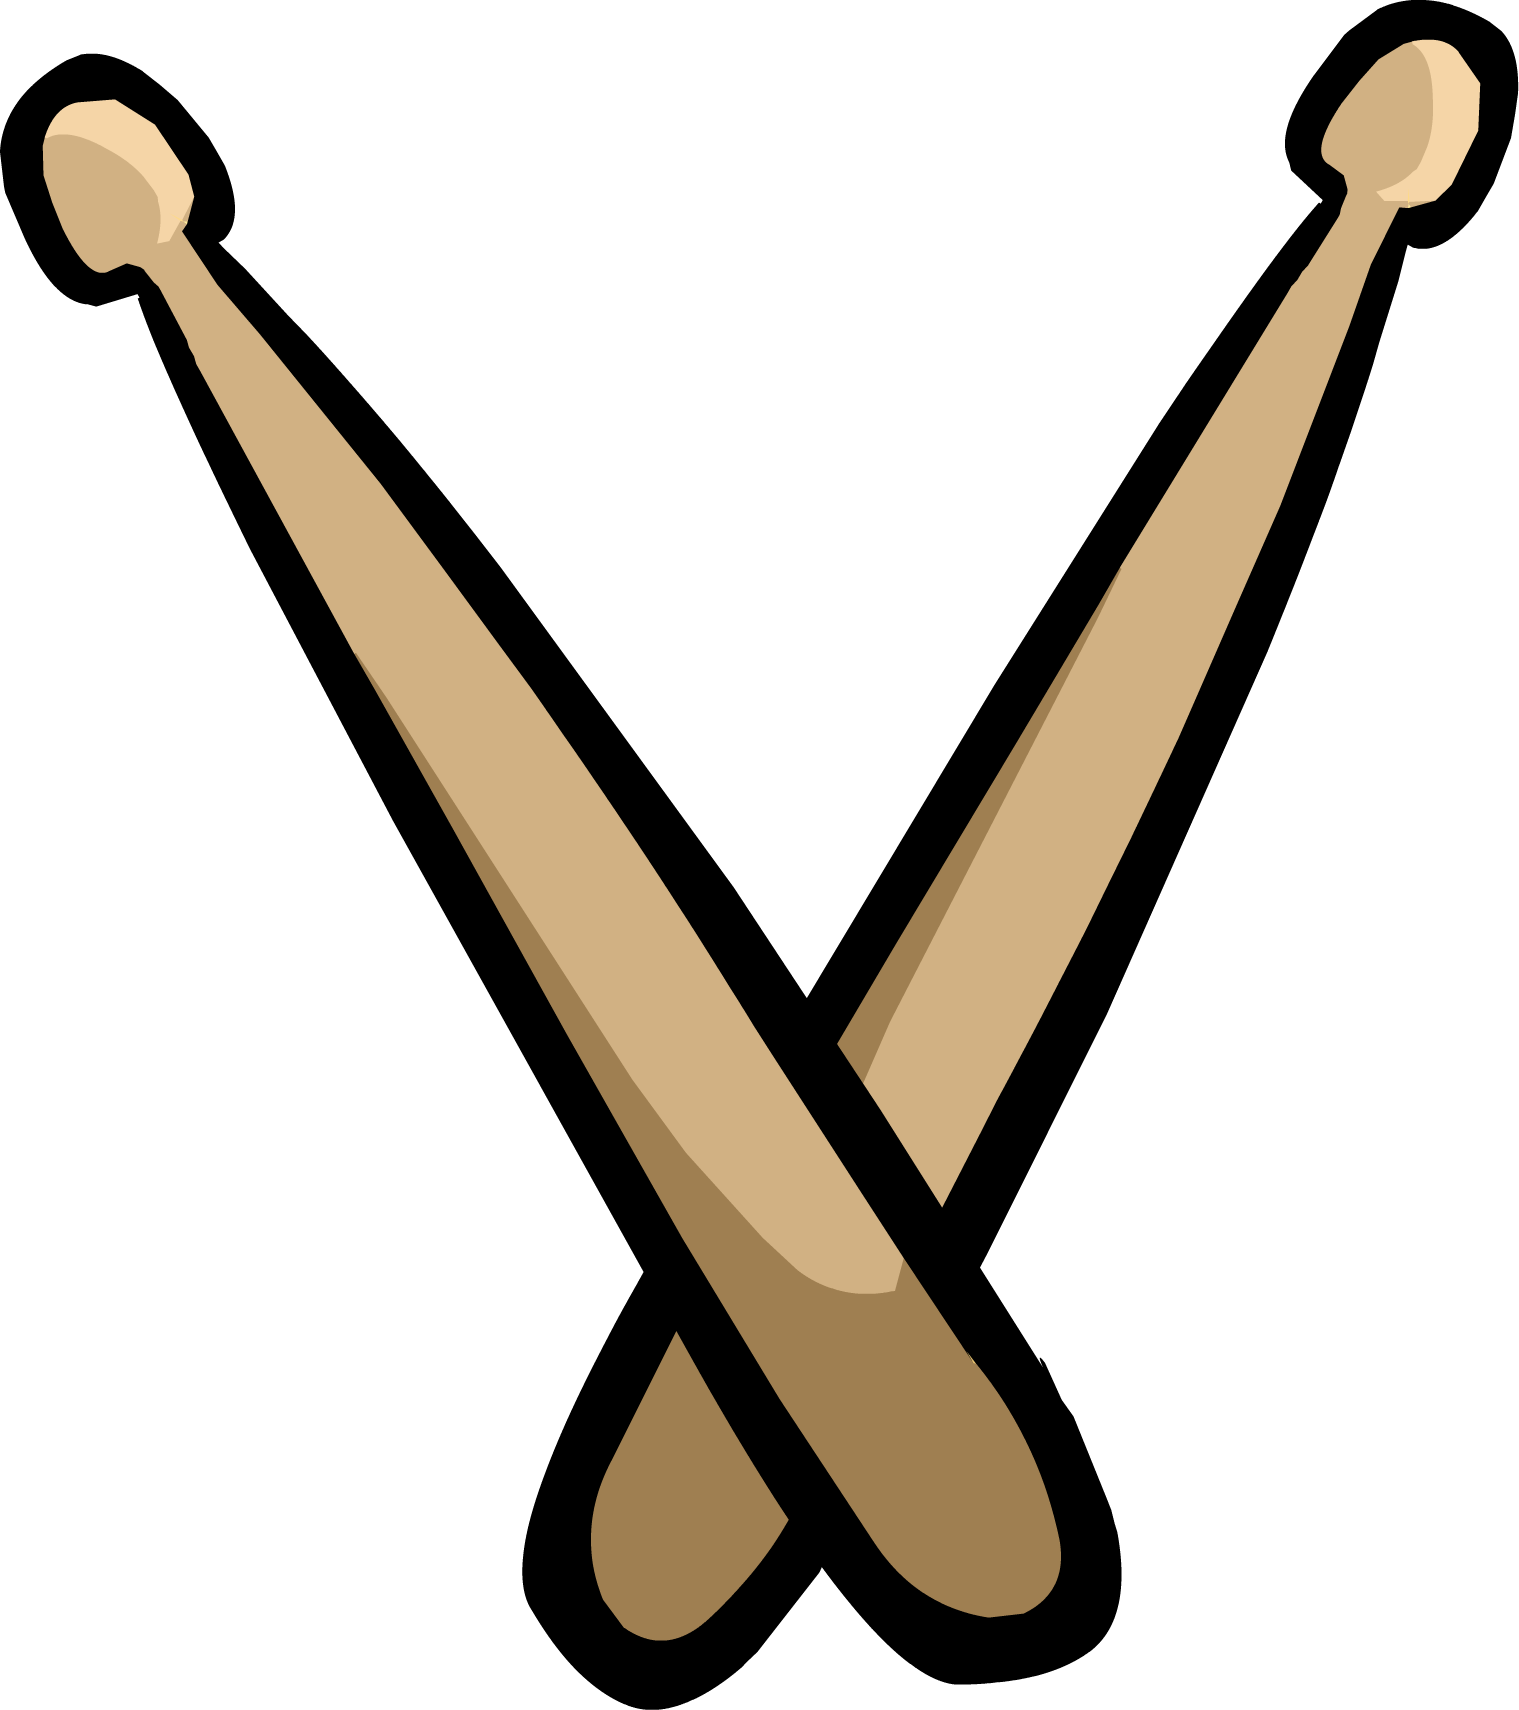 Drumsticks | Club Penguin Wiki | FANDOM powered by Wikia